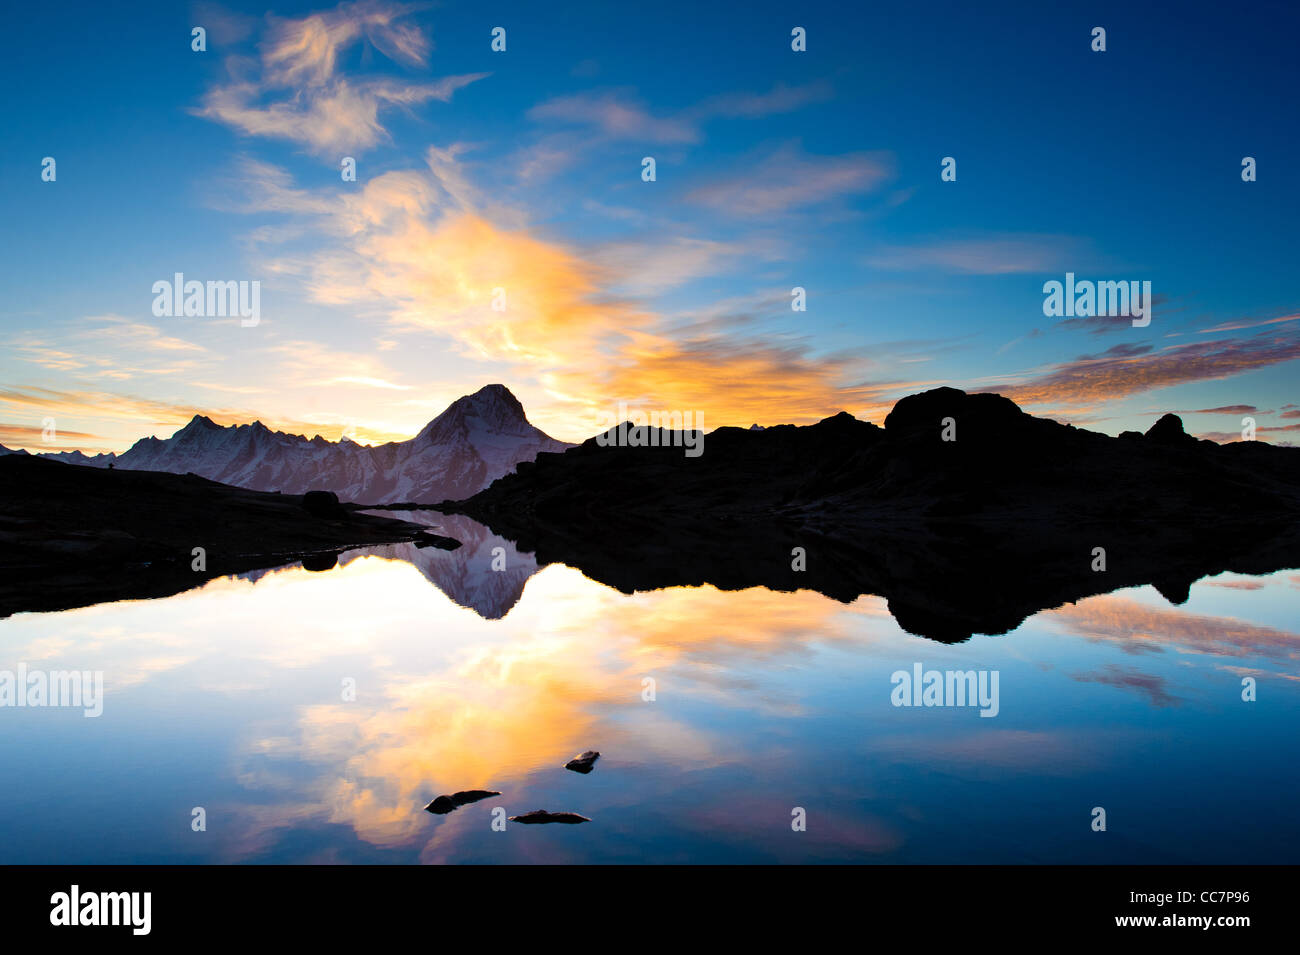 Bietschorn pic de montagne au lever du soleil se reflétant dans petit lac, Loetschenpass, Valais, Suisse Banque D'Images